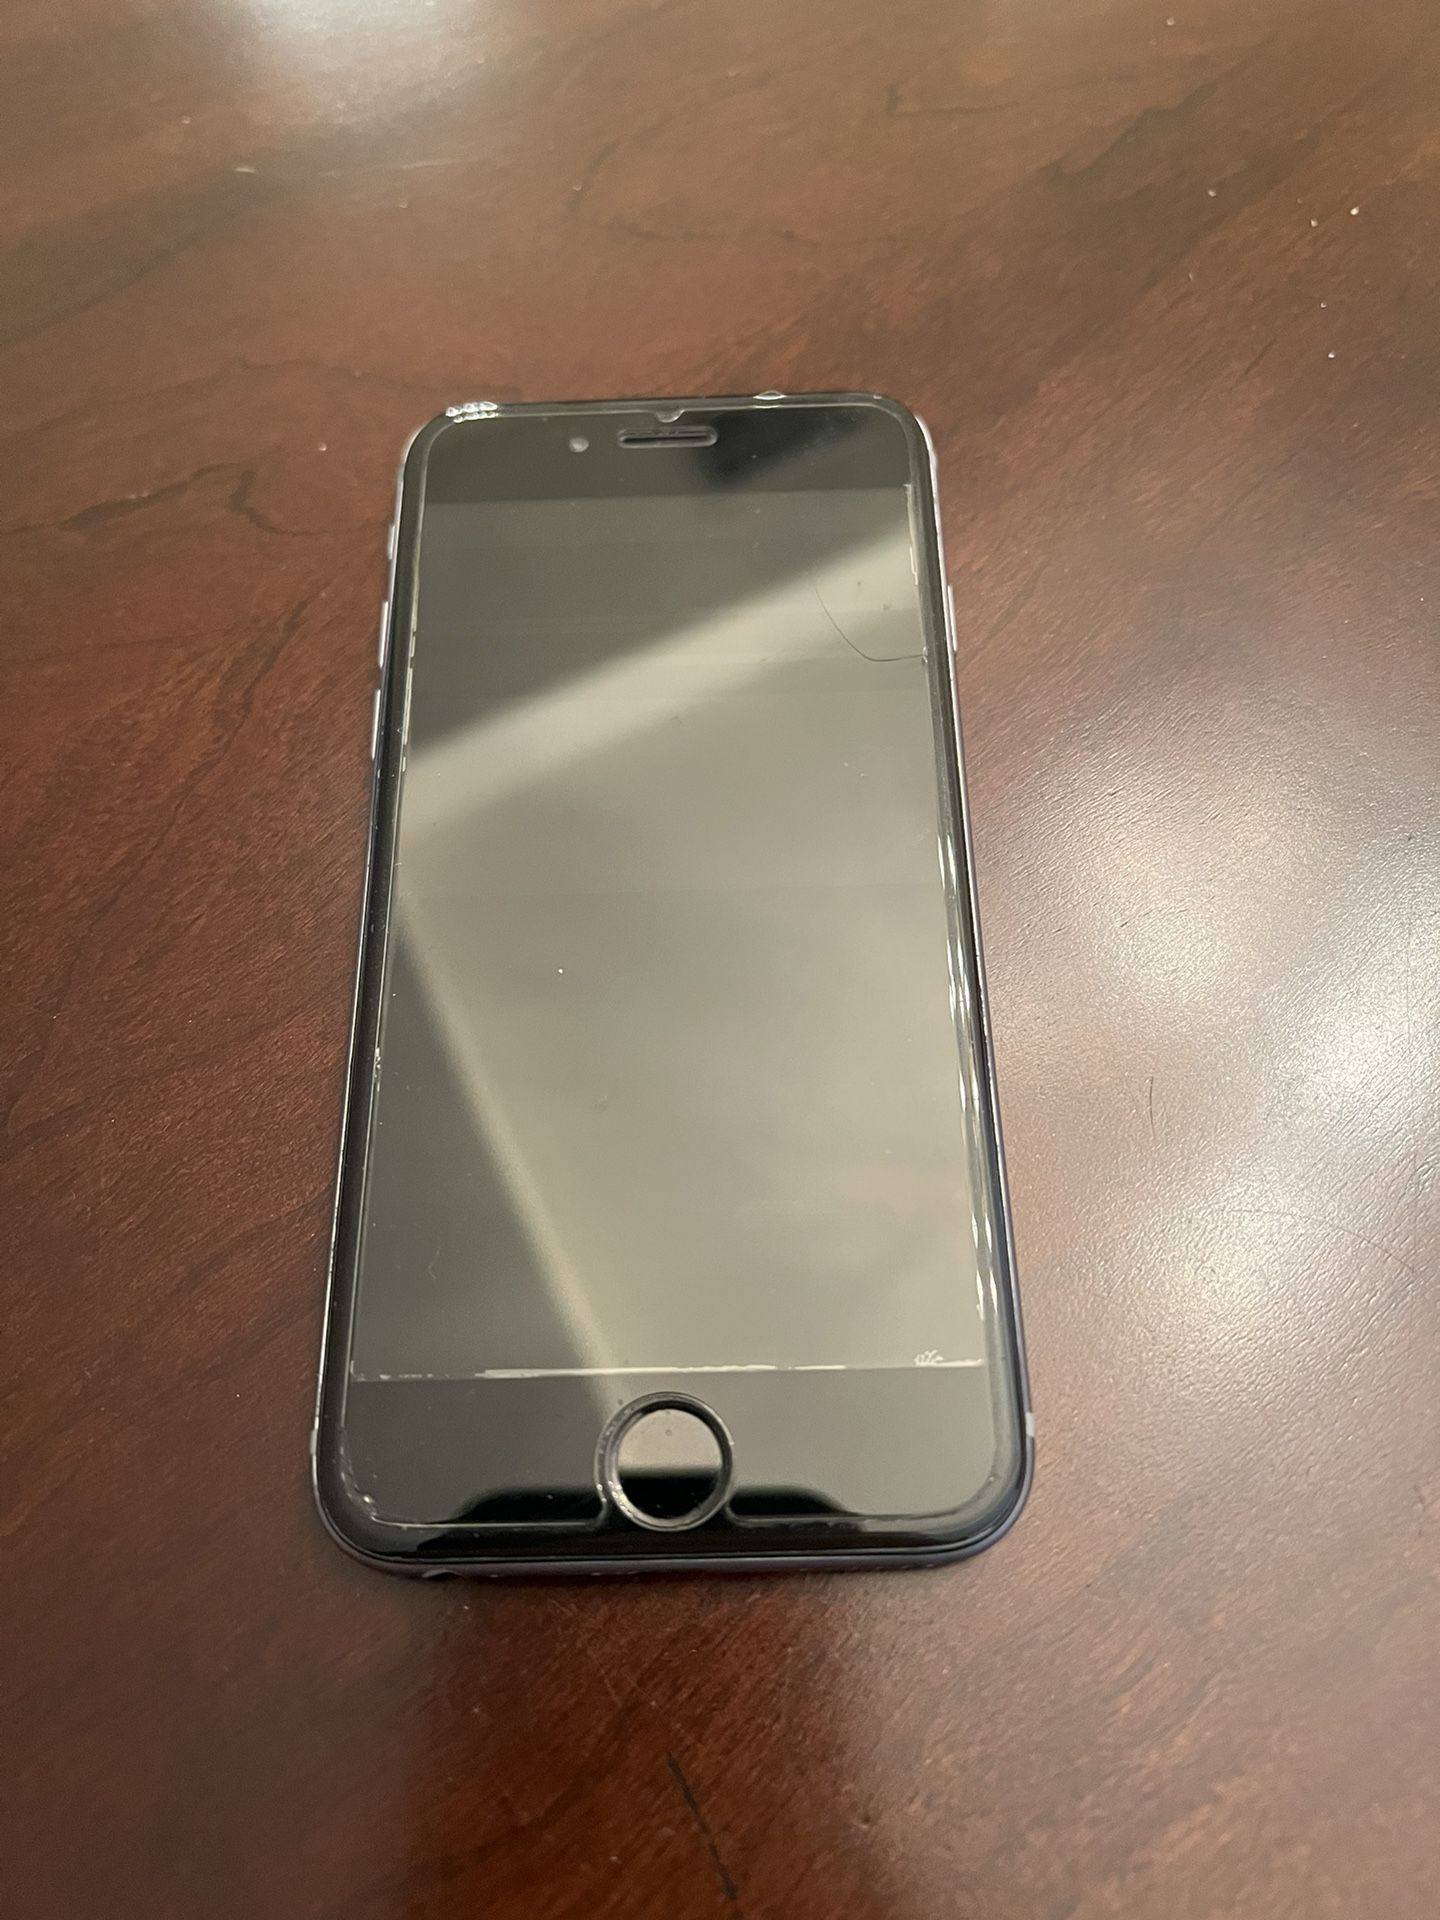 Broken iPhone 6 